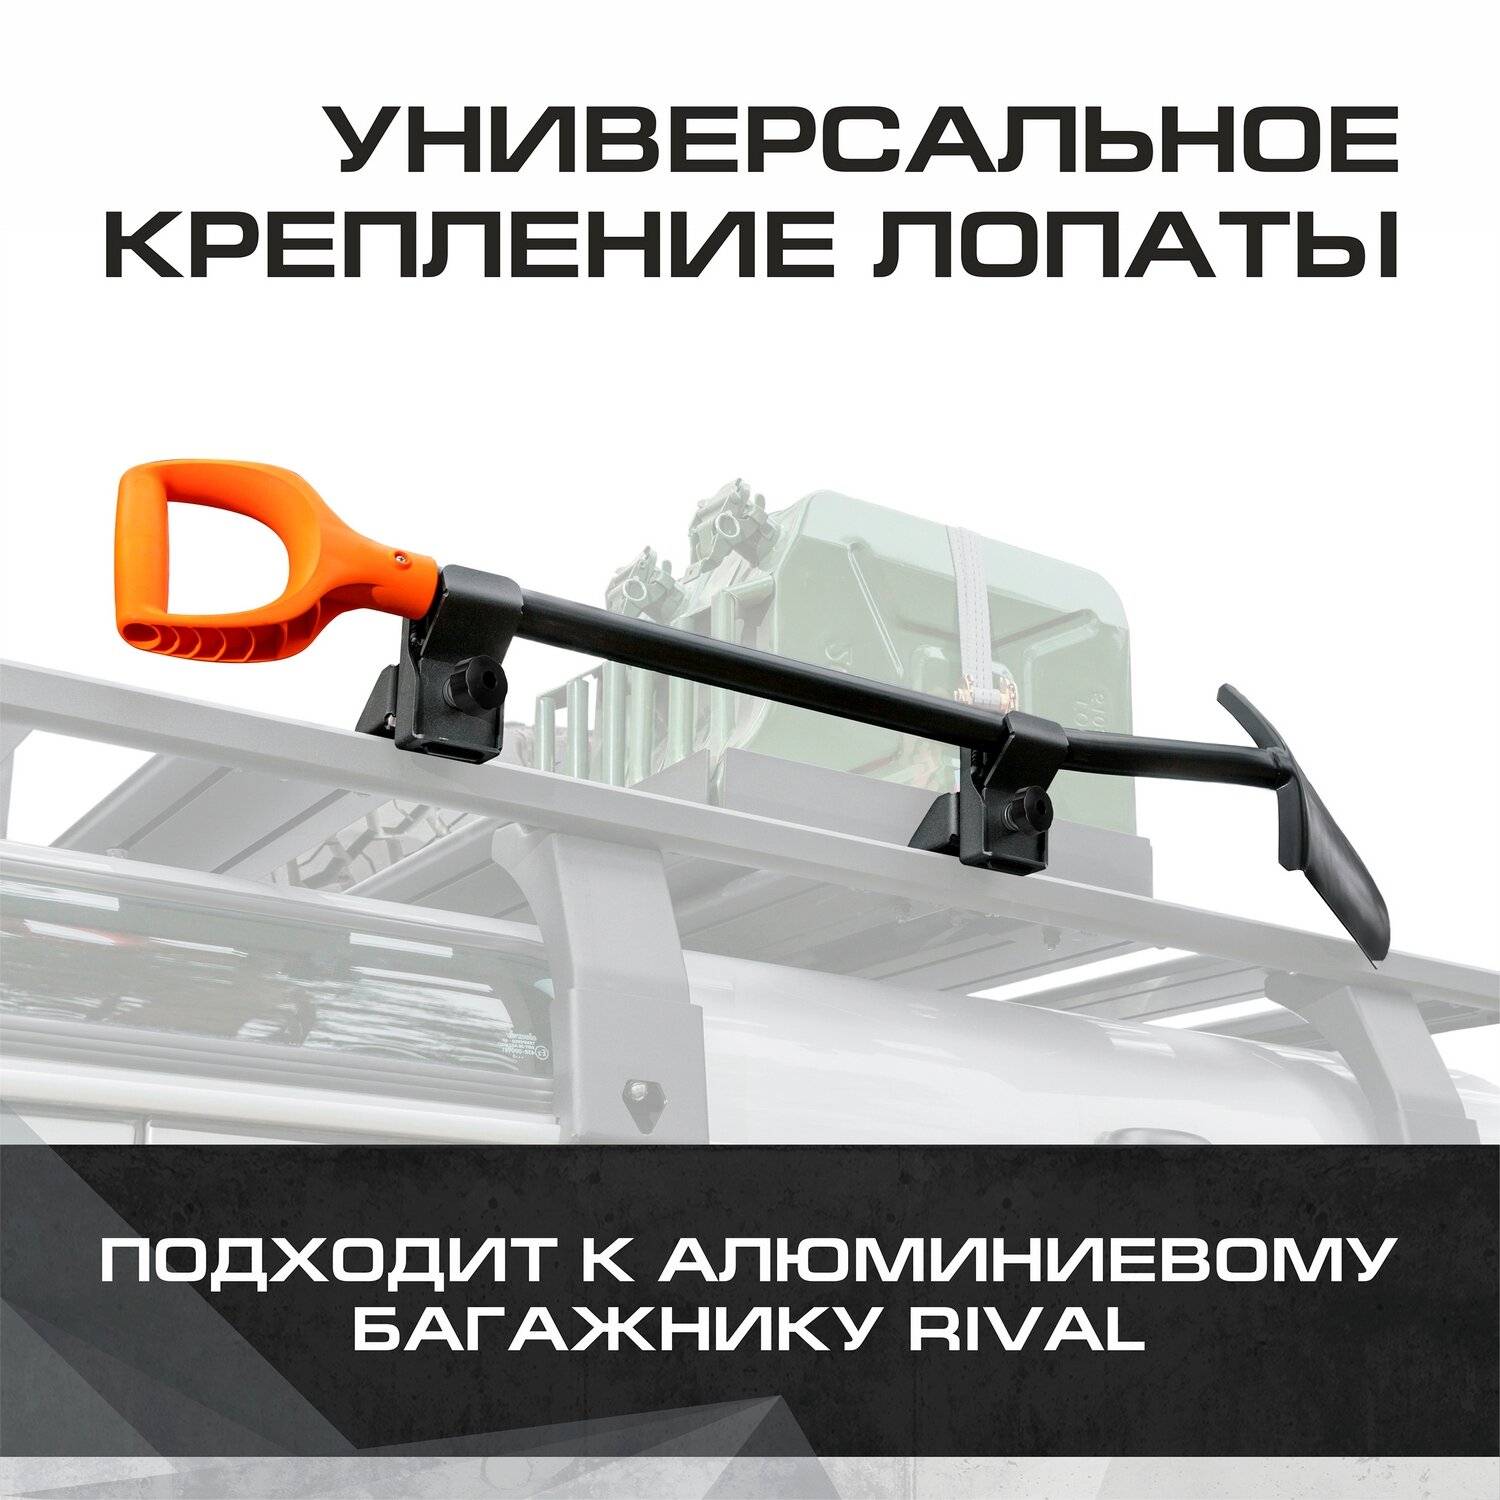 Крепление лопаты для багажников Rival алюминий с крепежом 2MD.0013.3